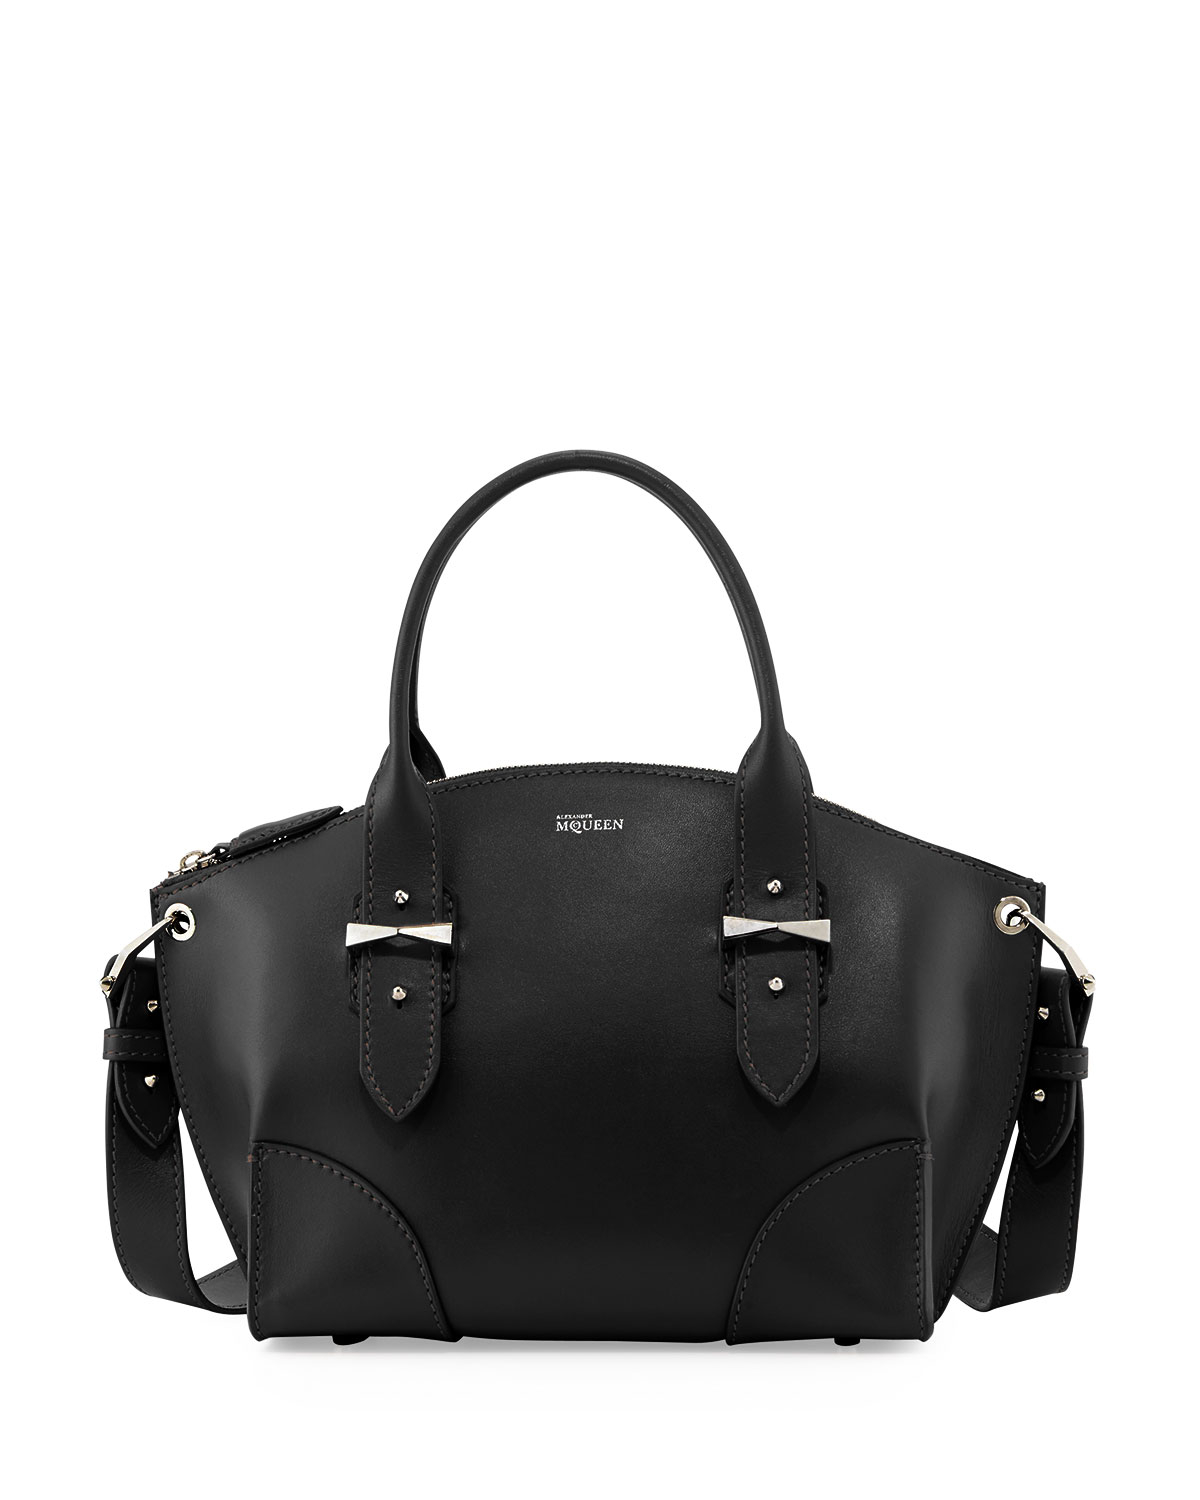 Legend Leather Satchel Bag in Black 